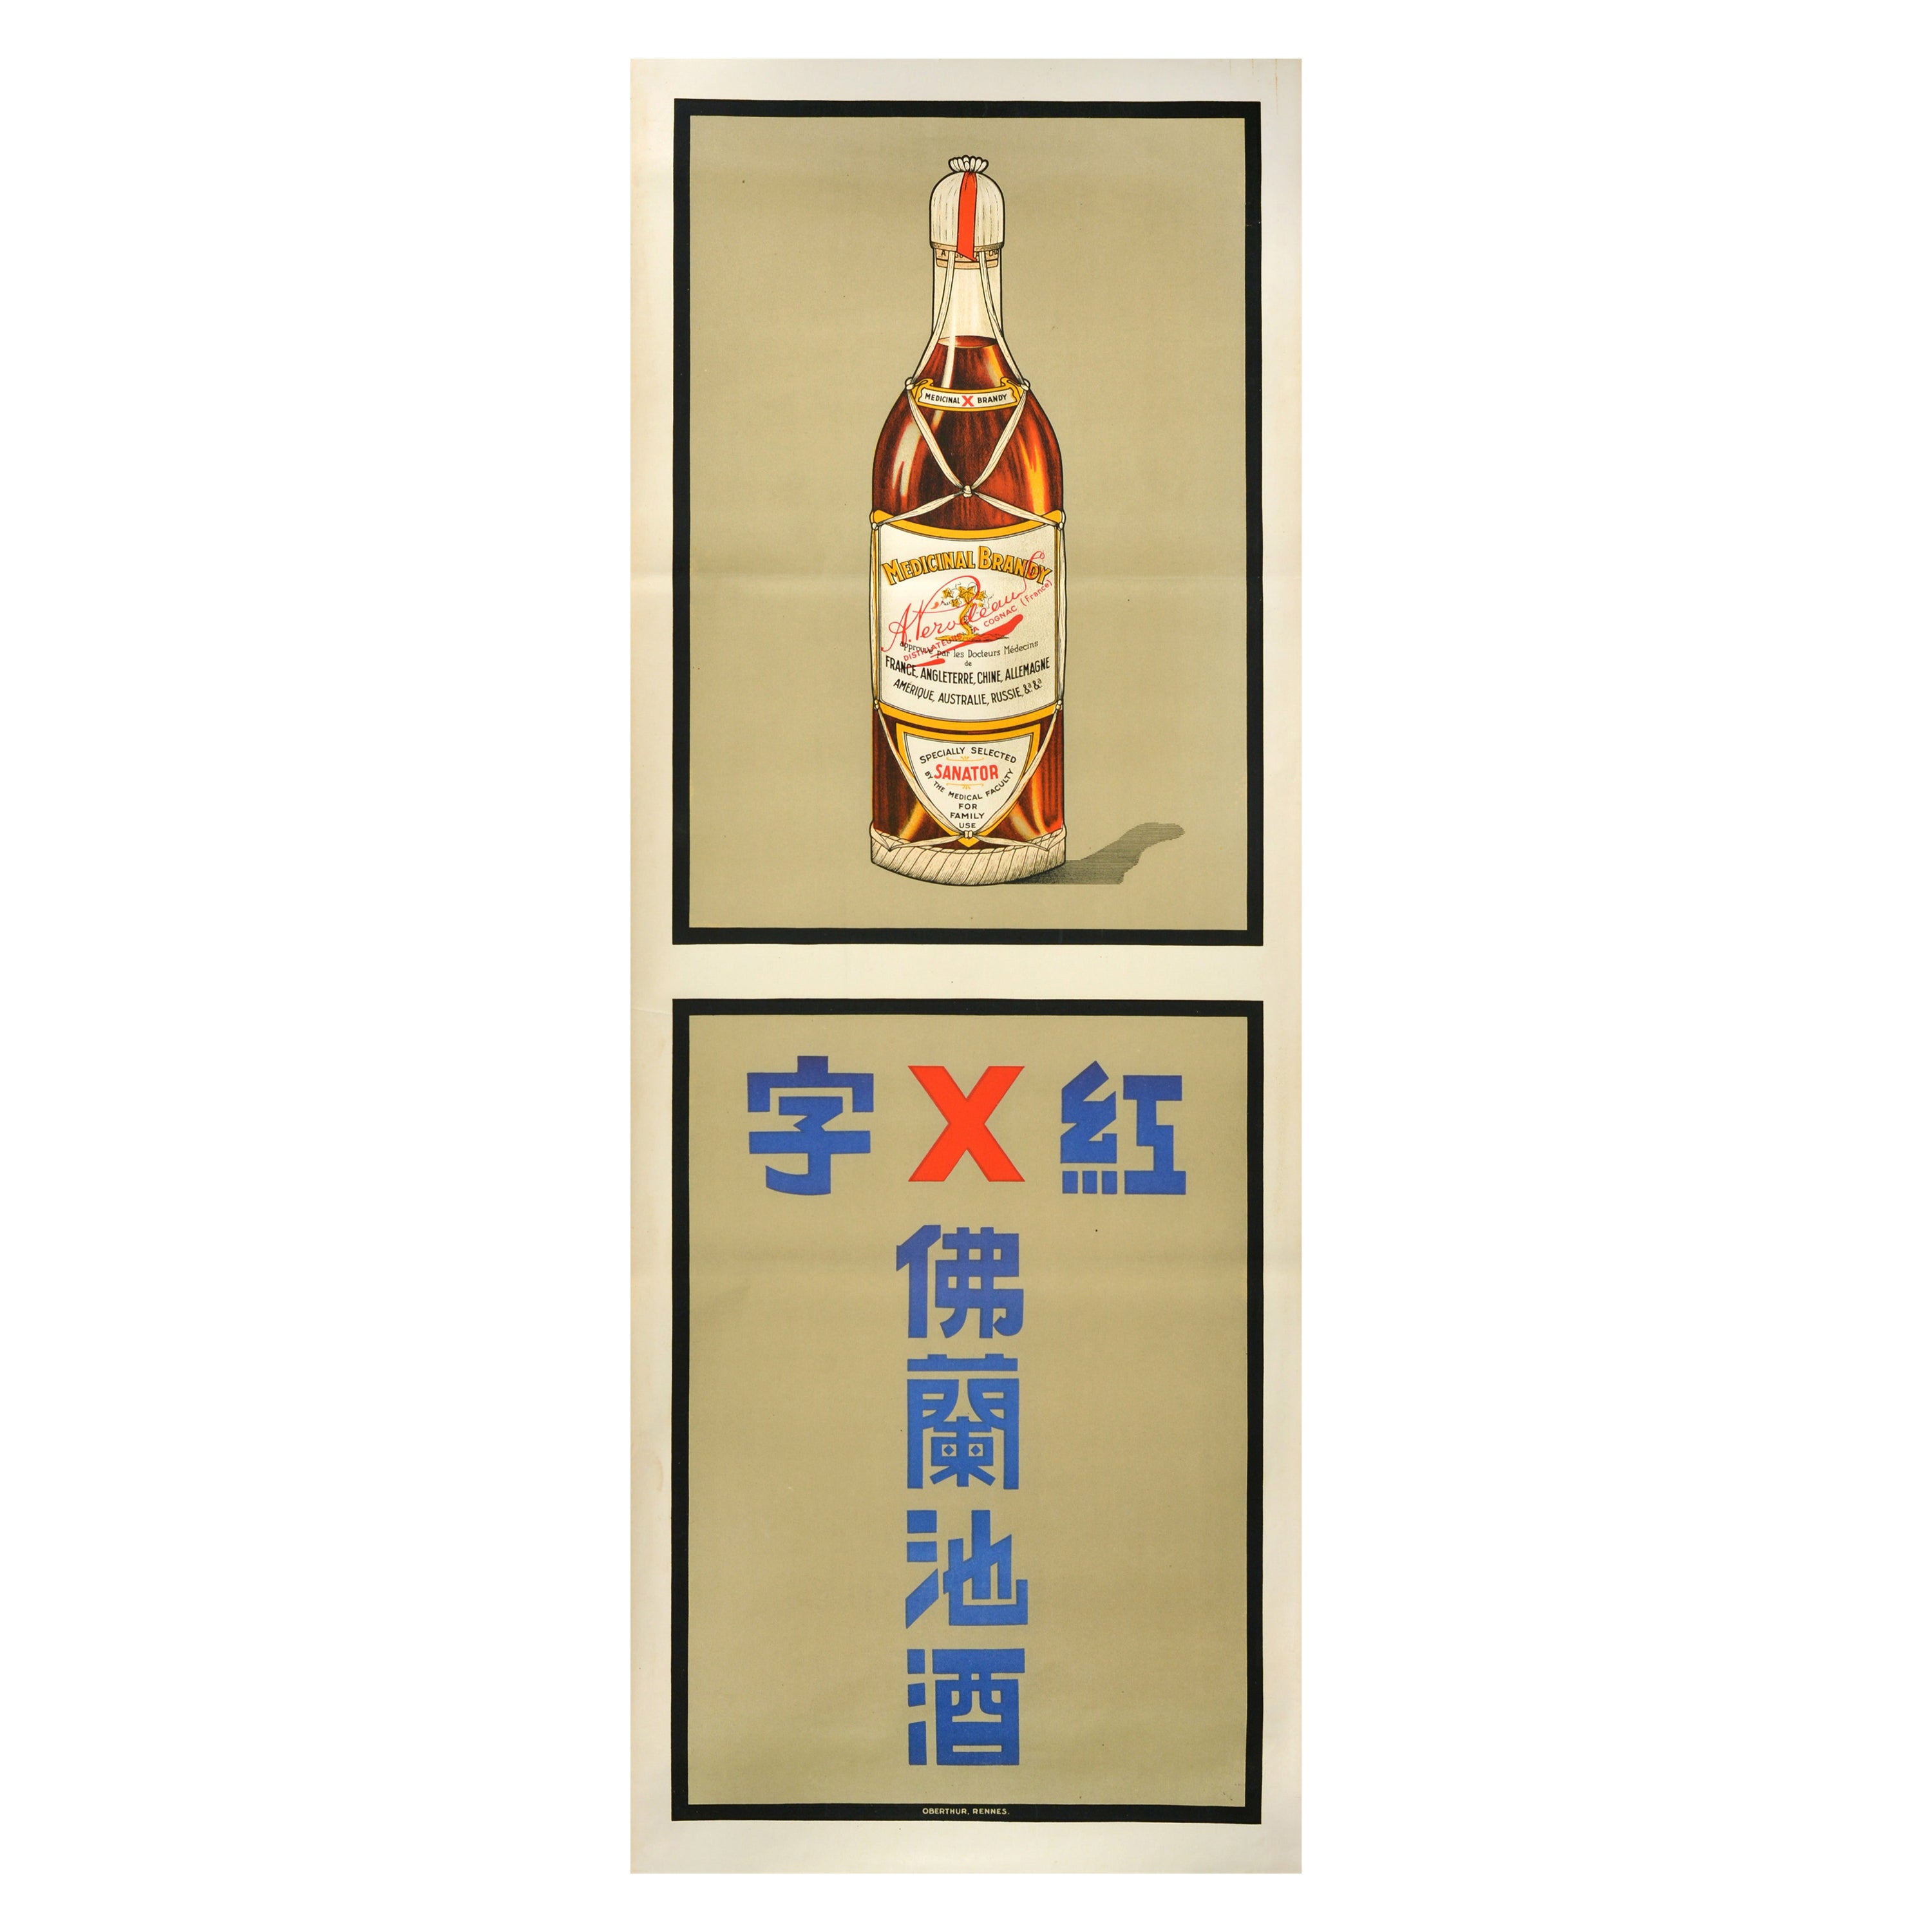 Original Vintage Drink Advertising Poster Medicinal Brandy Perodeau Sanator For Sale